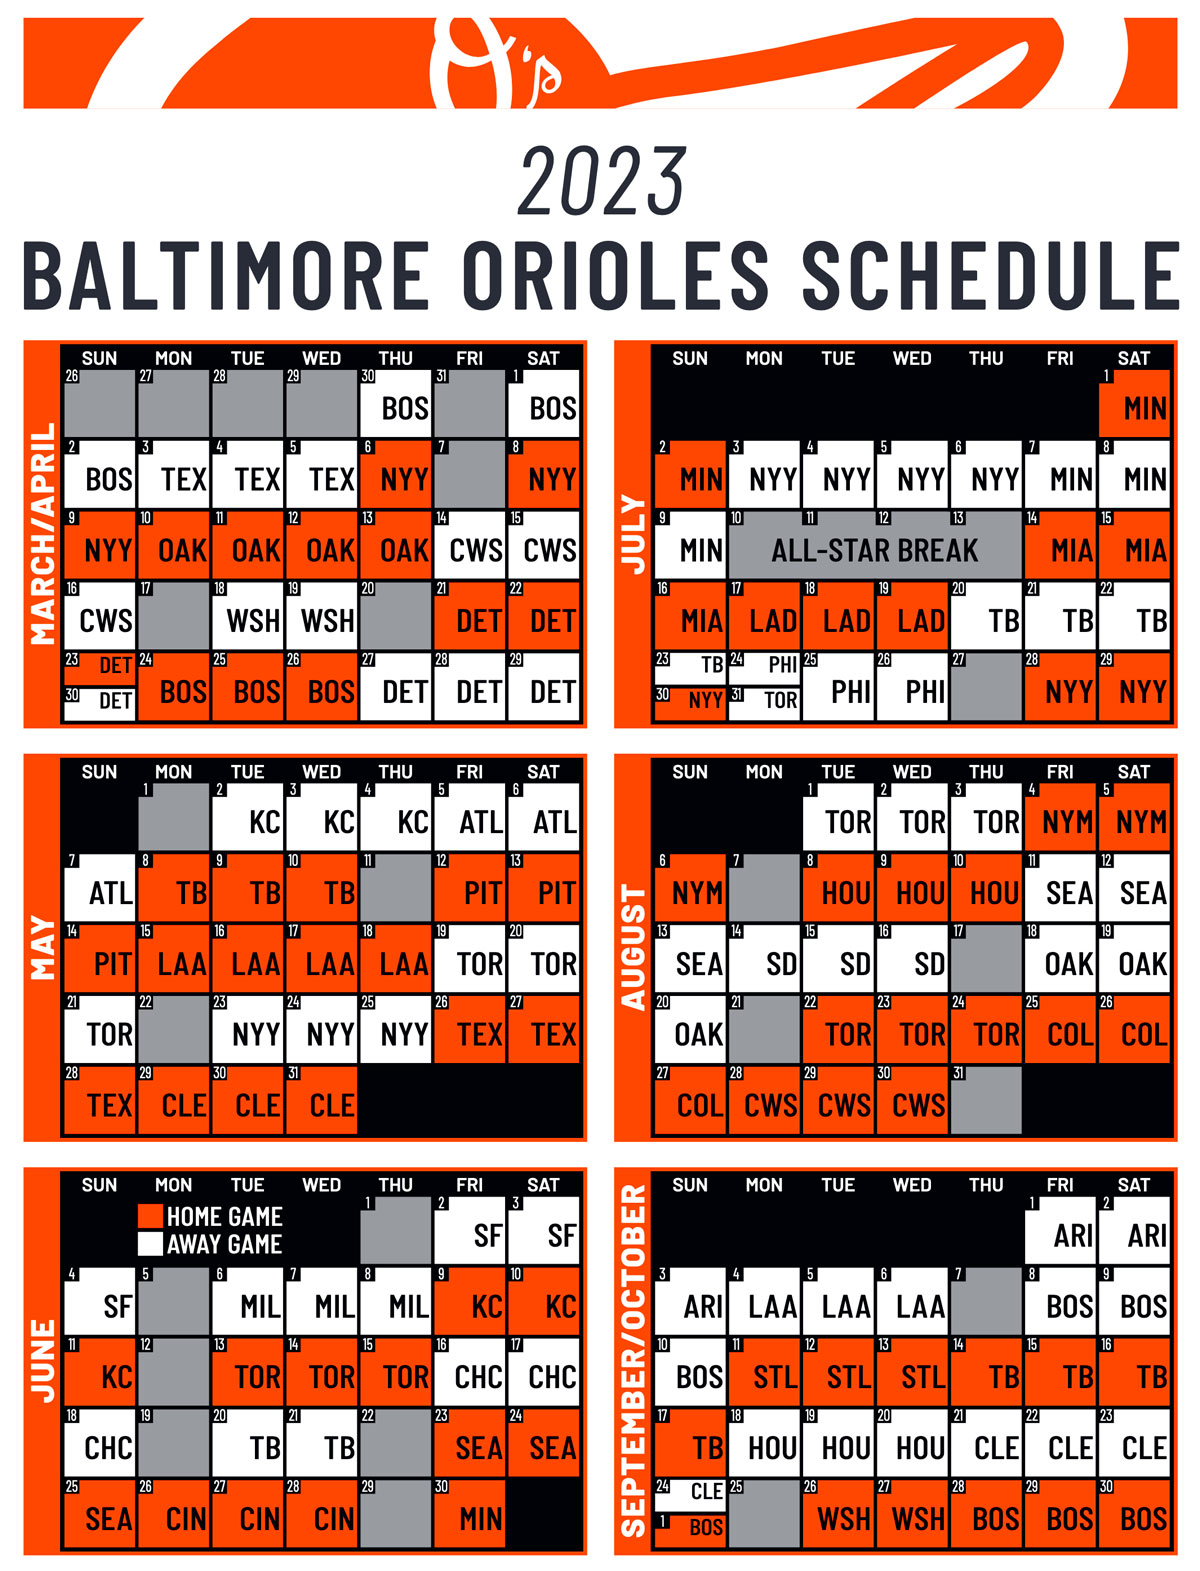 Orioles release 2023 schedule - Blog